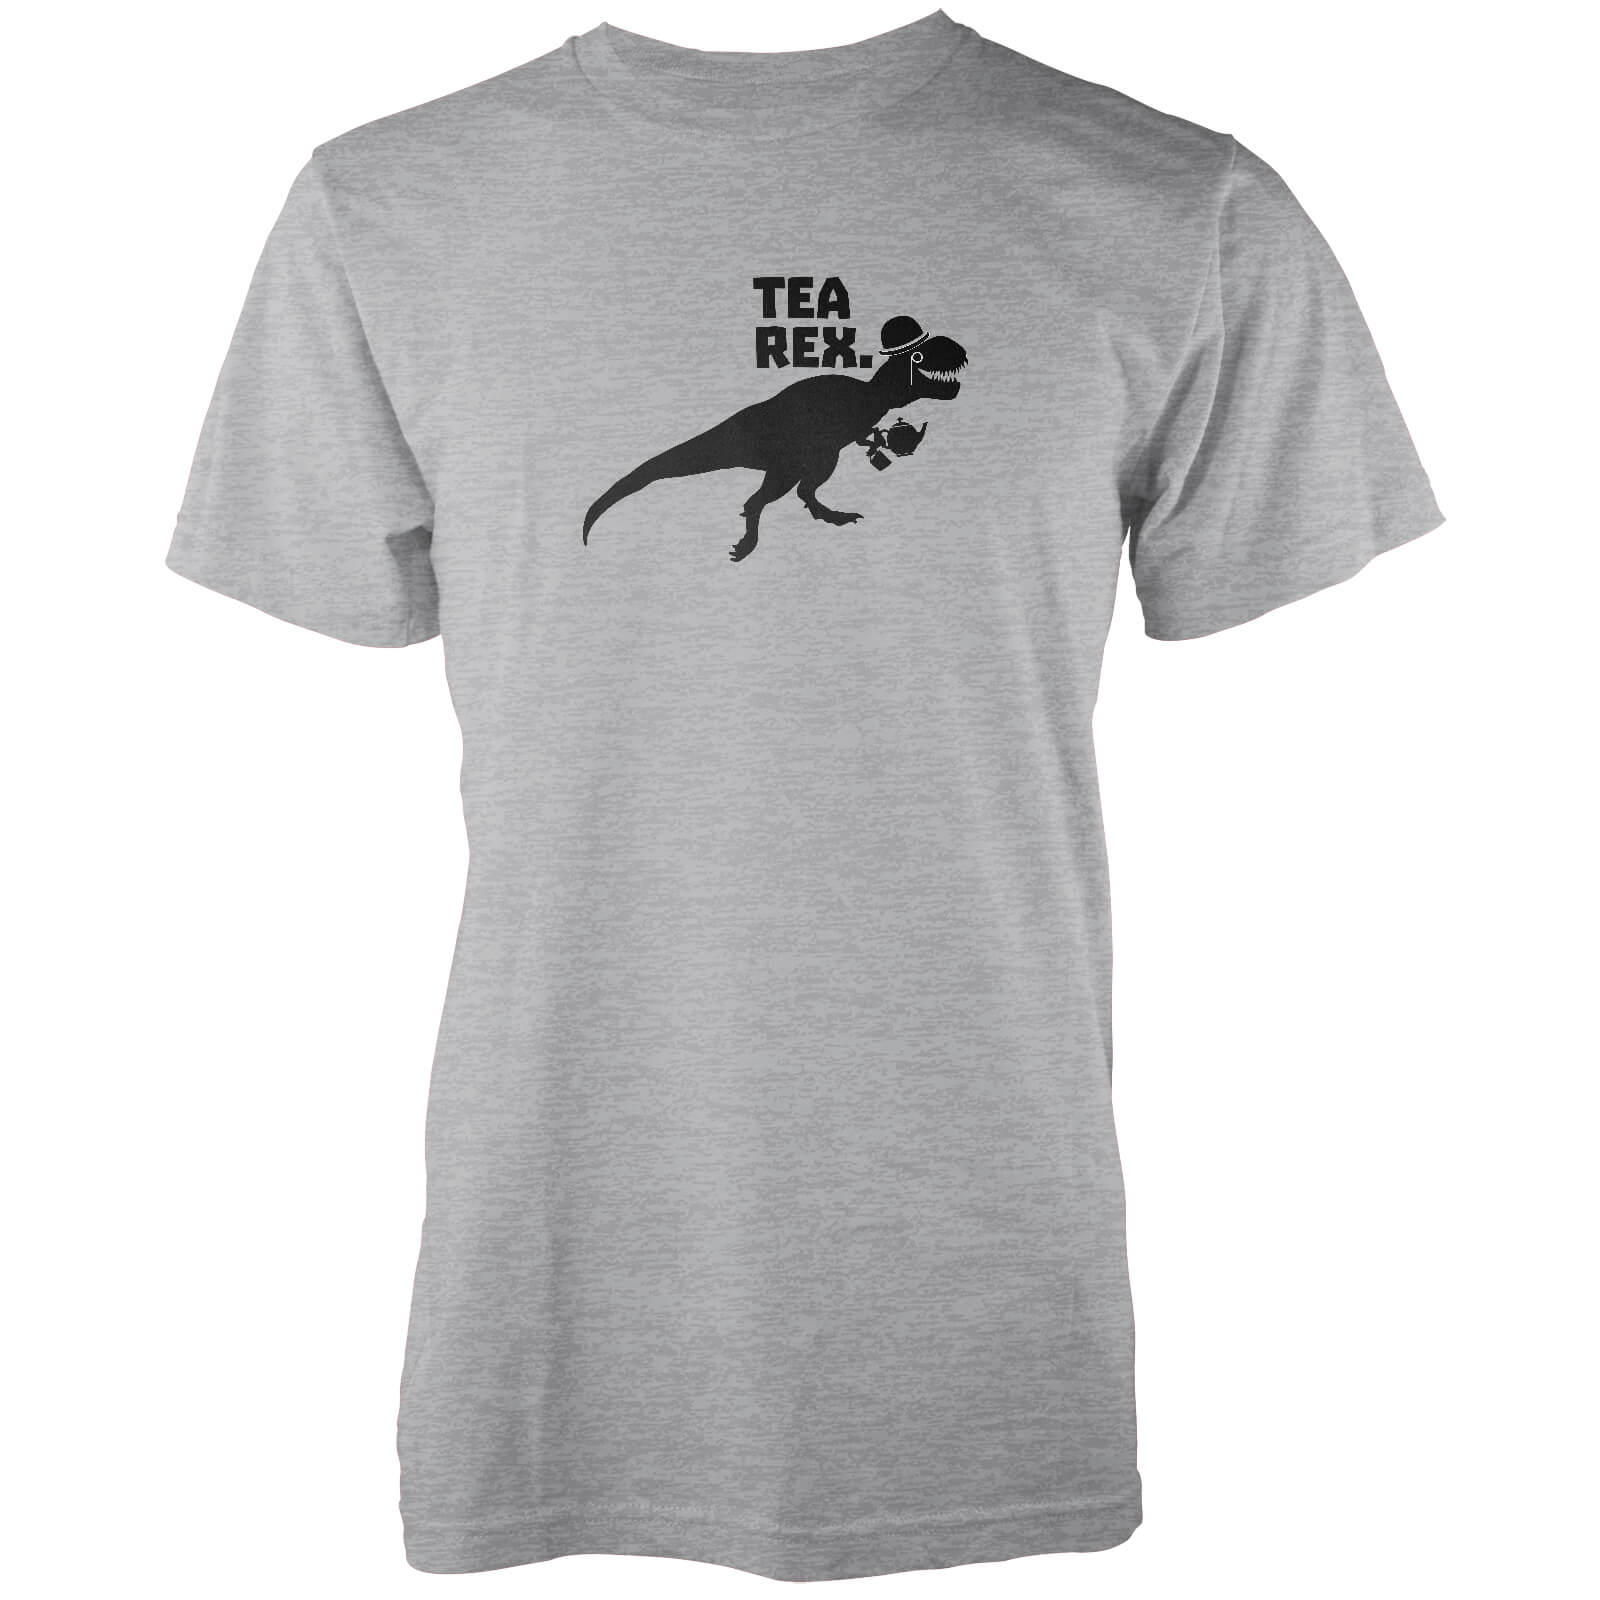 Tea Rex Grey T-Shirt - S - Grey